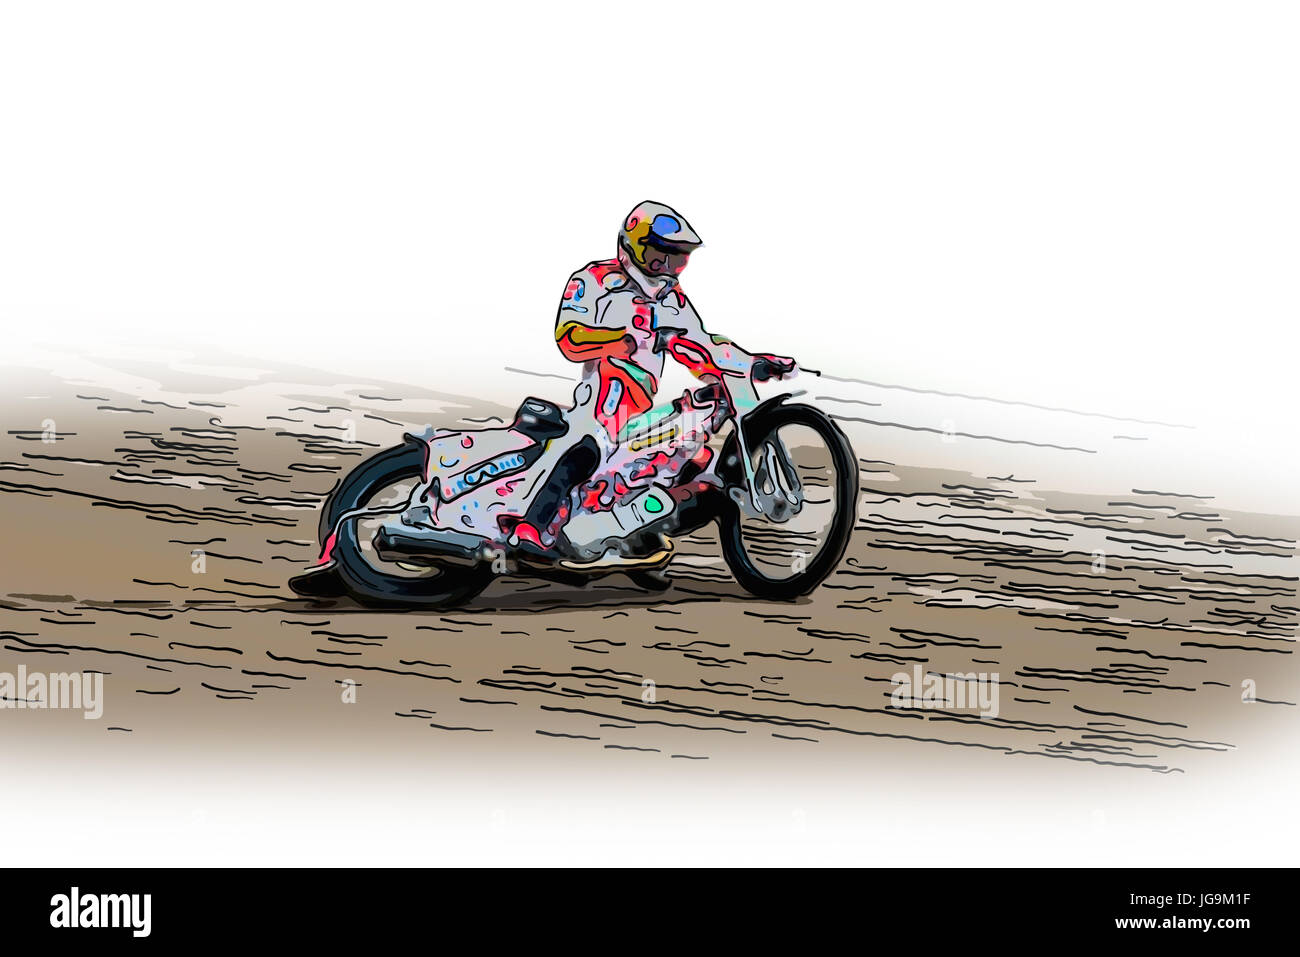 Une illustration d'une moto rapide sur une piste de course Banque D'Images